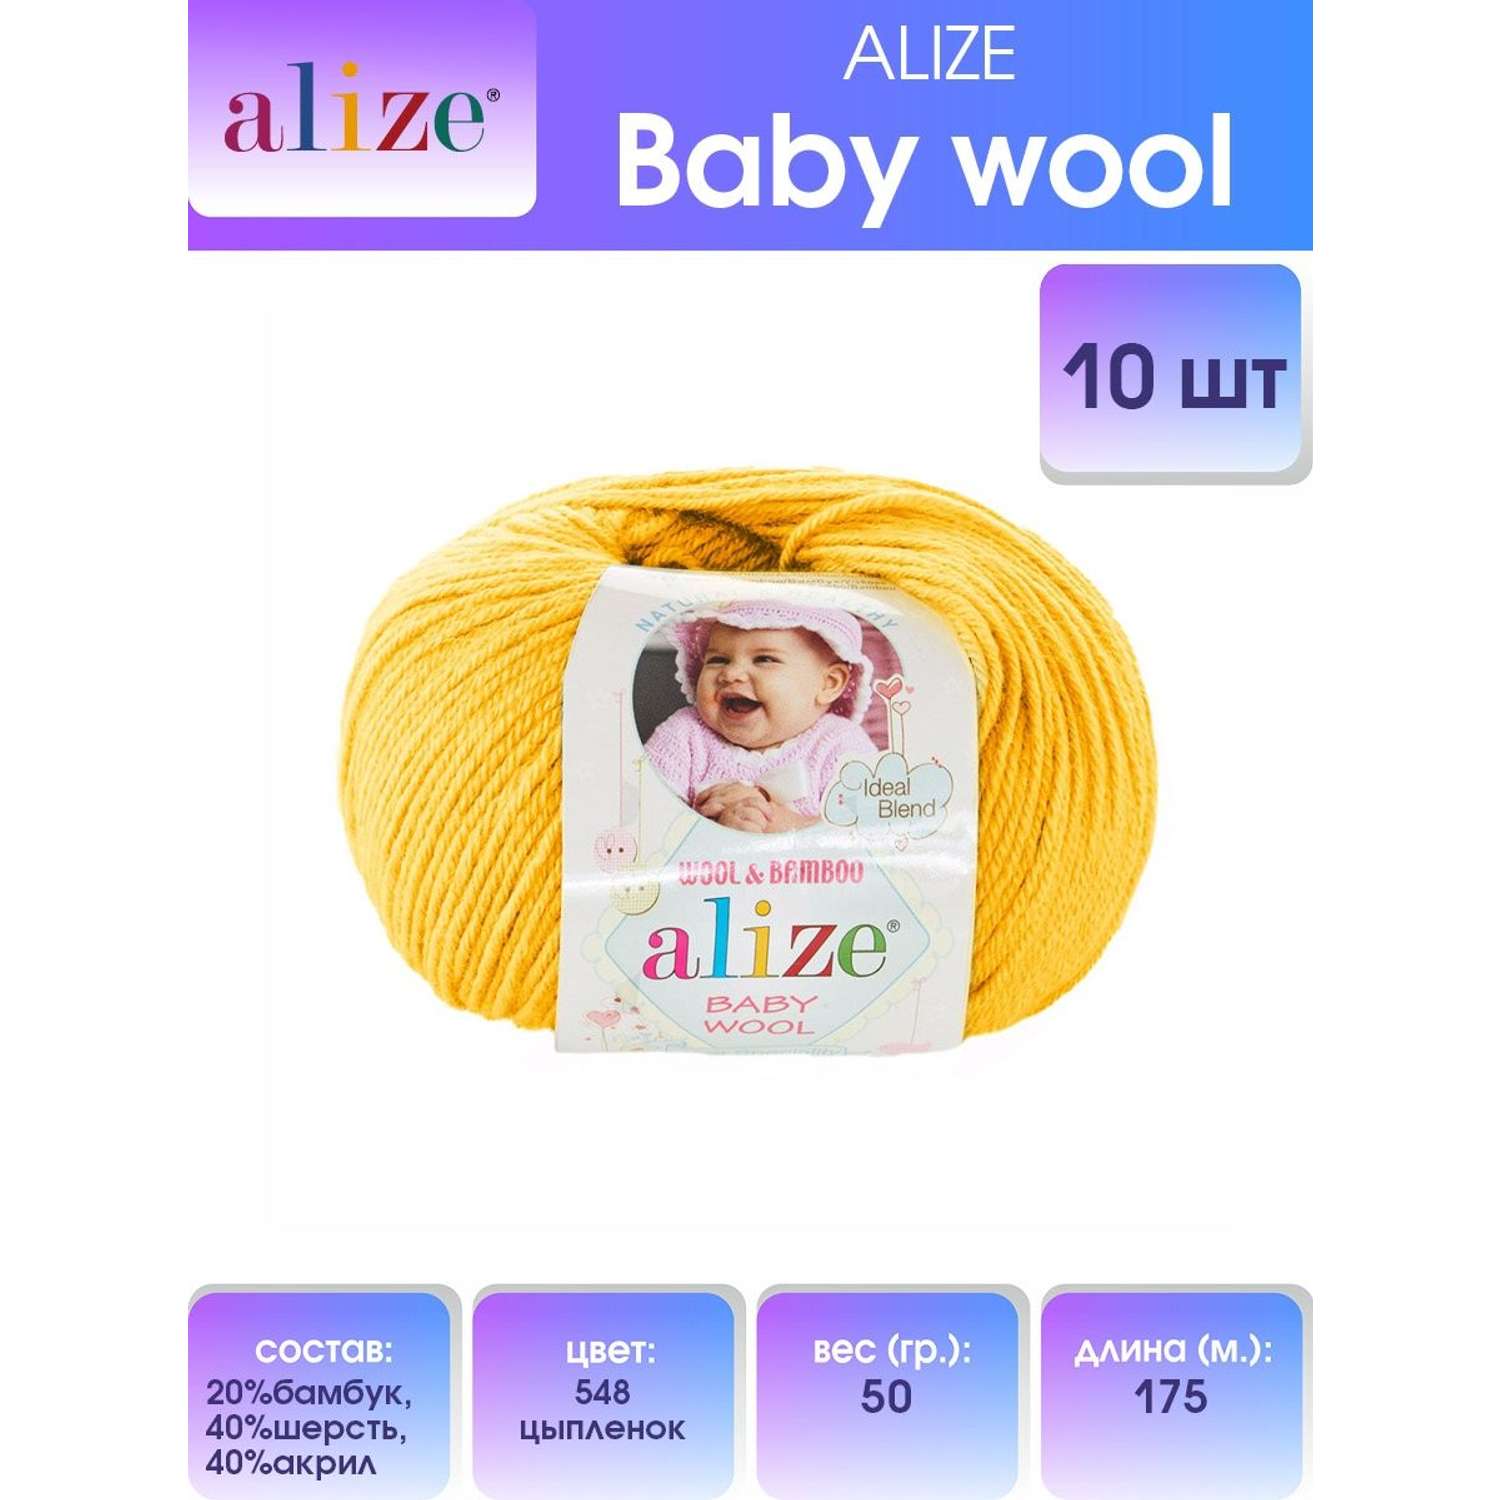 Пряжа для вязания Alize baby wool бамбук шерсть акрил мягкая 50 гр 175 м 548 цыпленок 10 мотков - фото 1